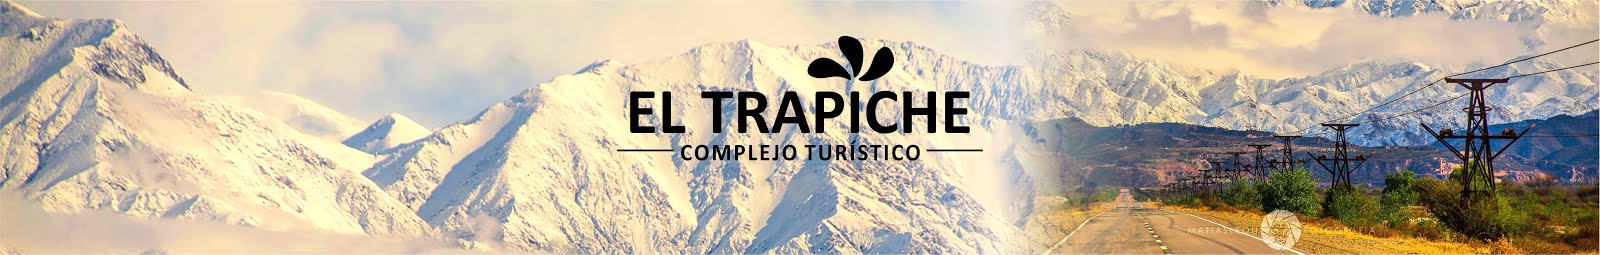 COMPLEJO EL TRAPICHE